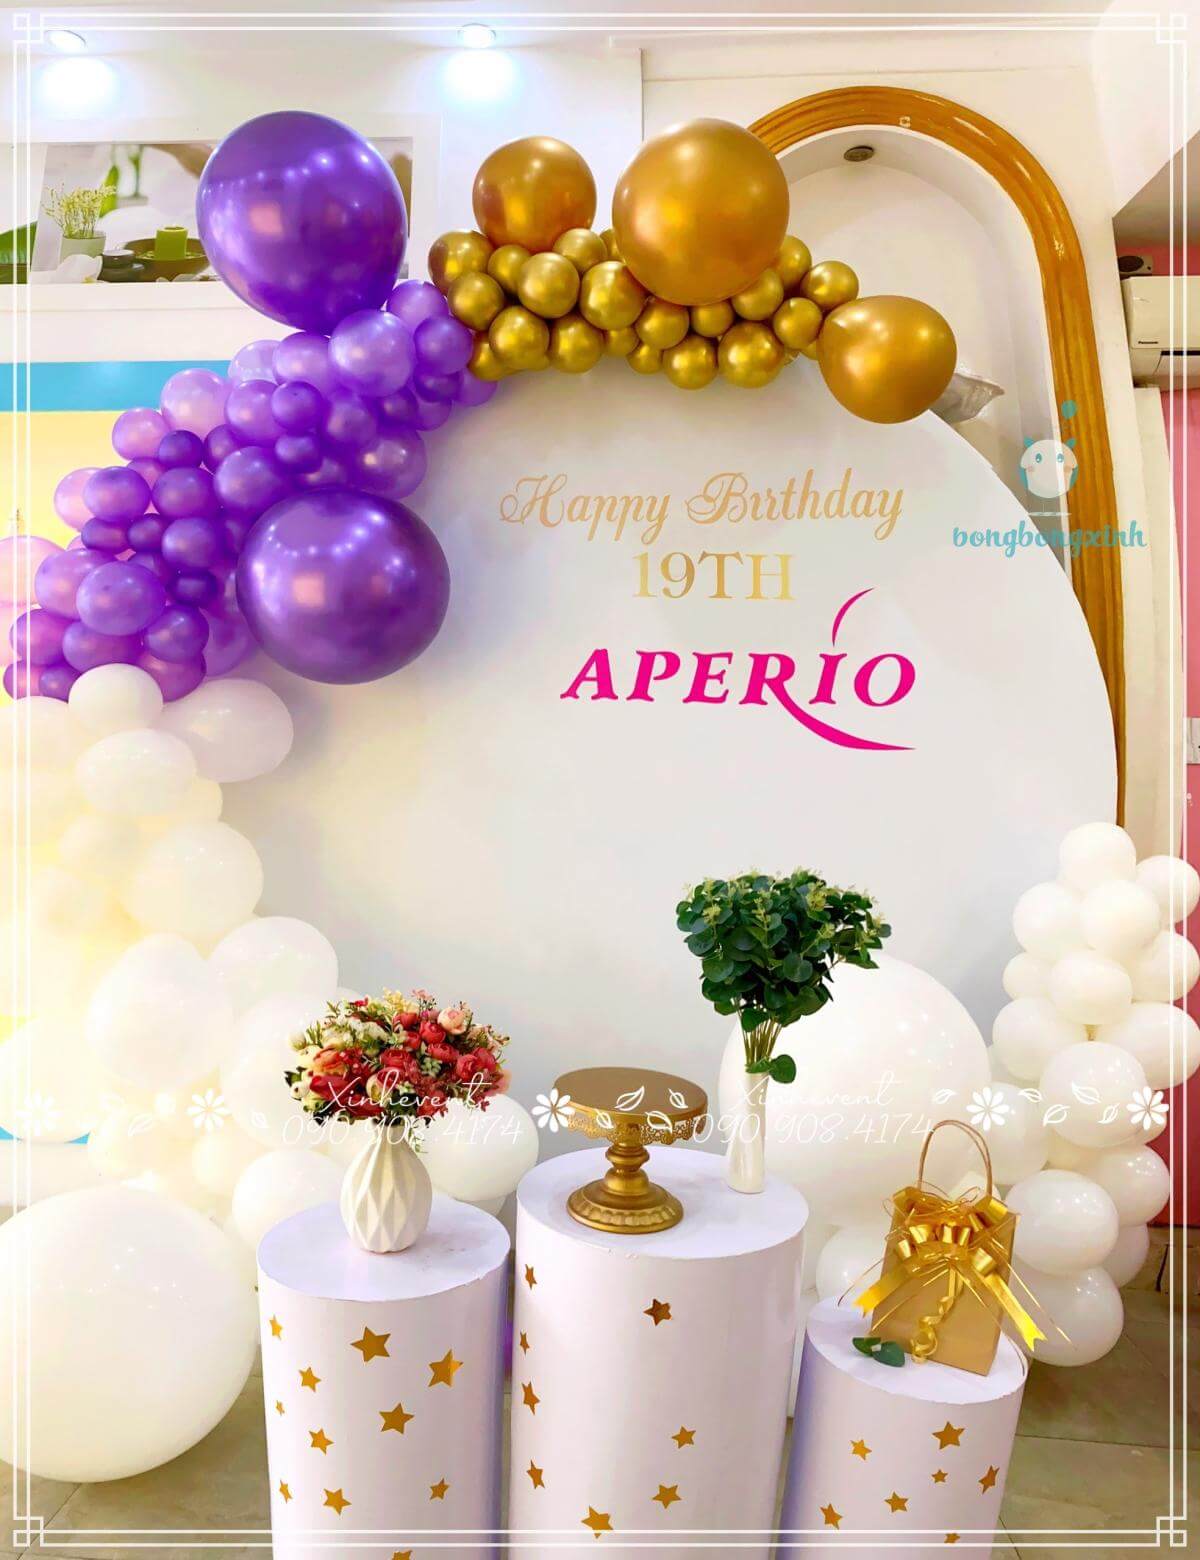 Trang trí sinh nhật 19th Aperio đơn giản mà sang trọng